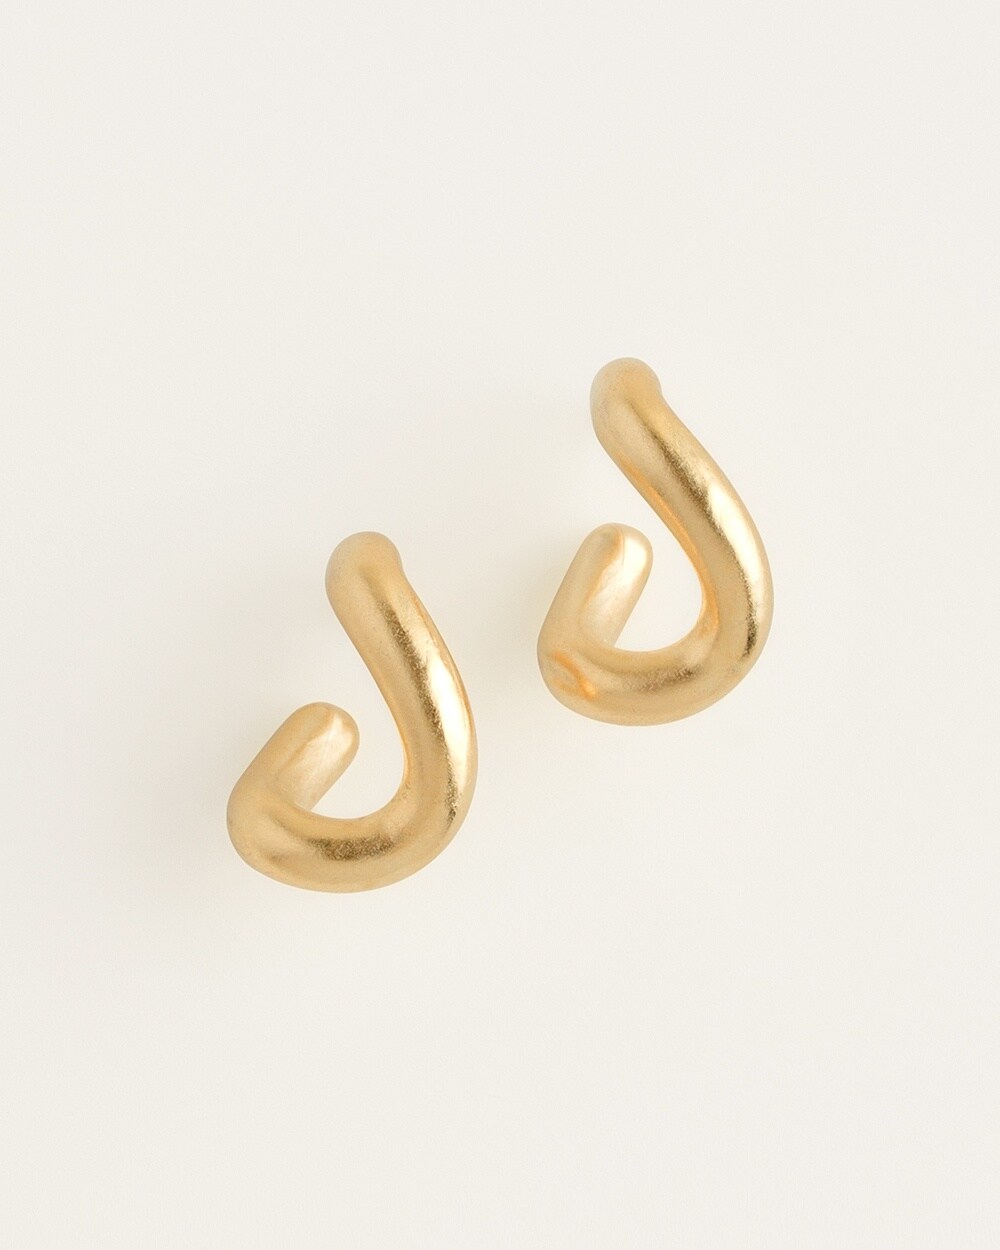 Goldtone Hoop Earrings